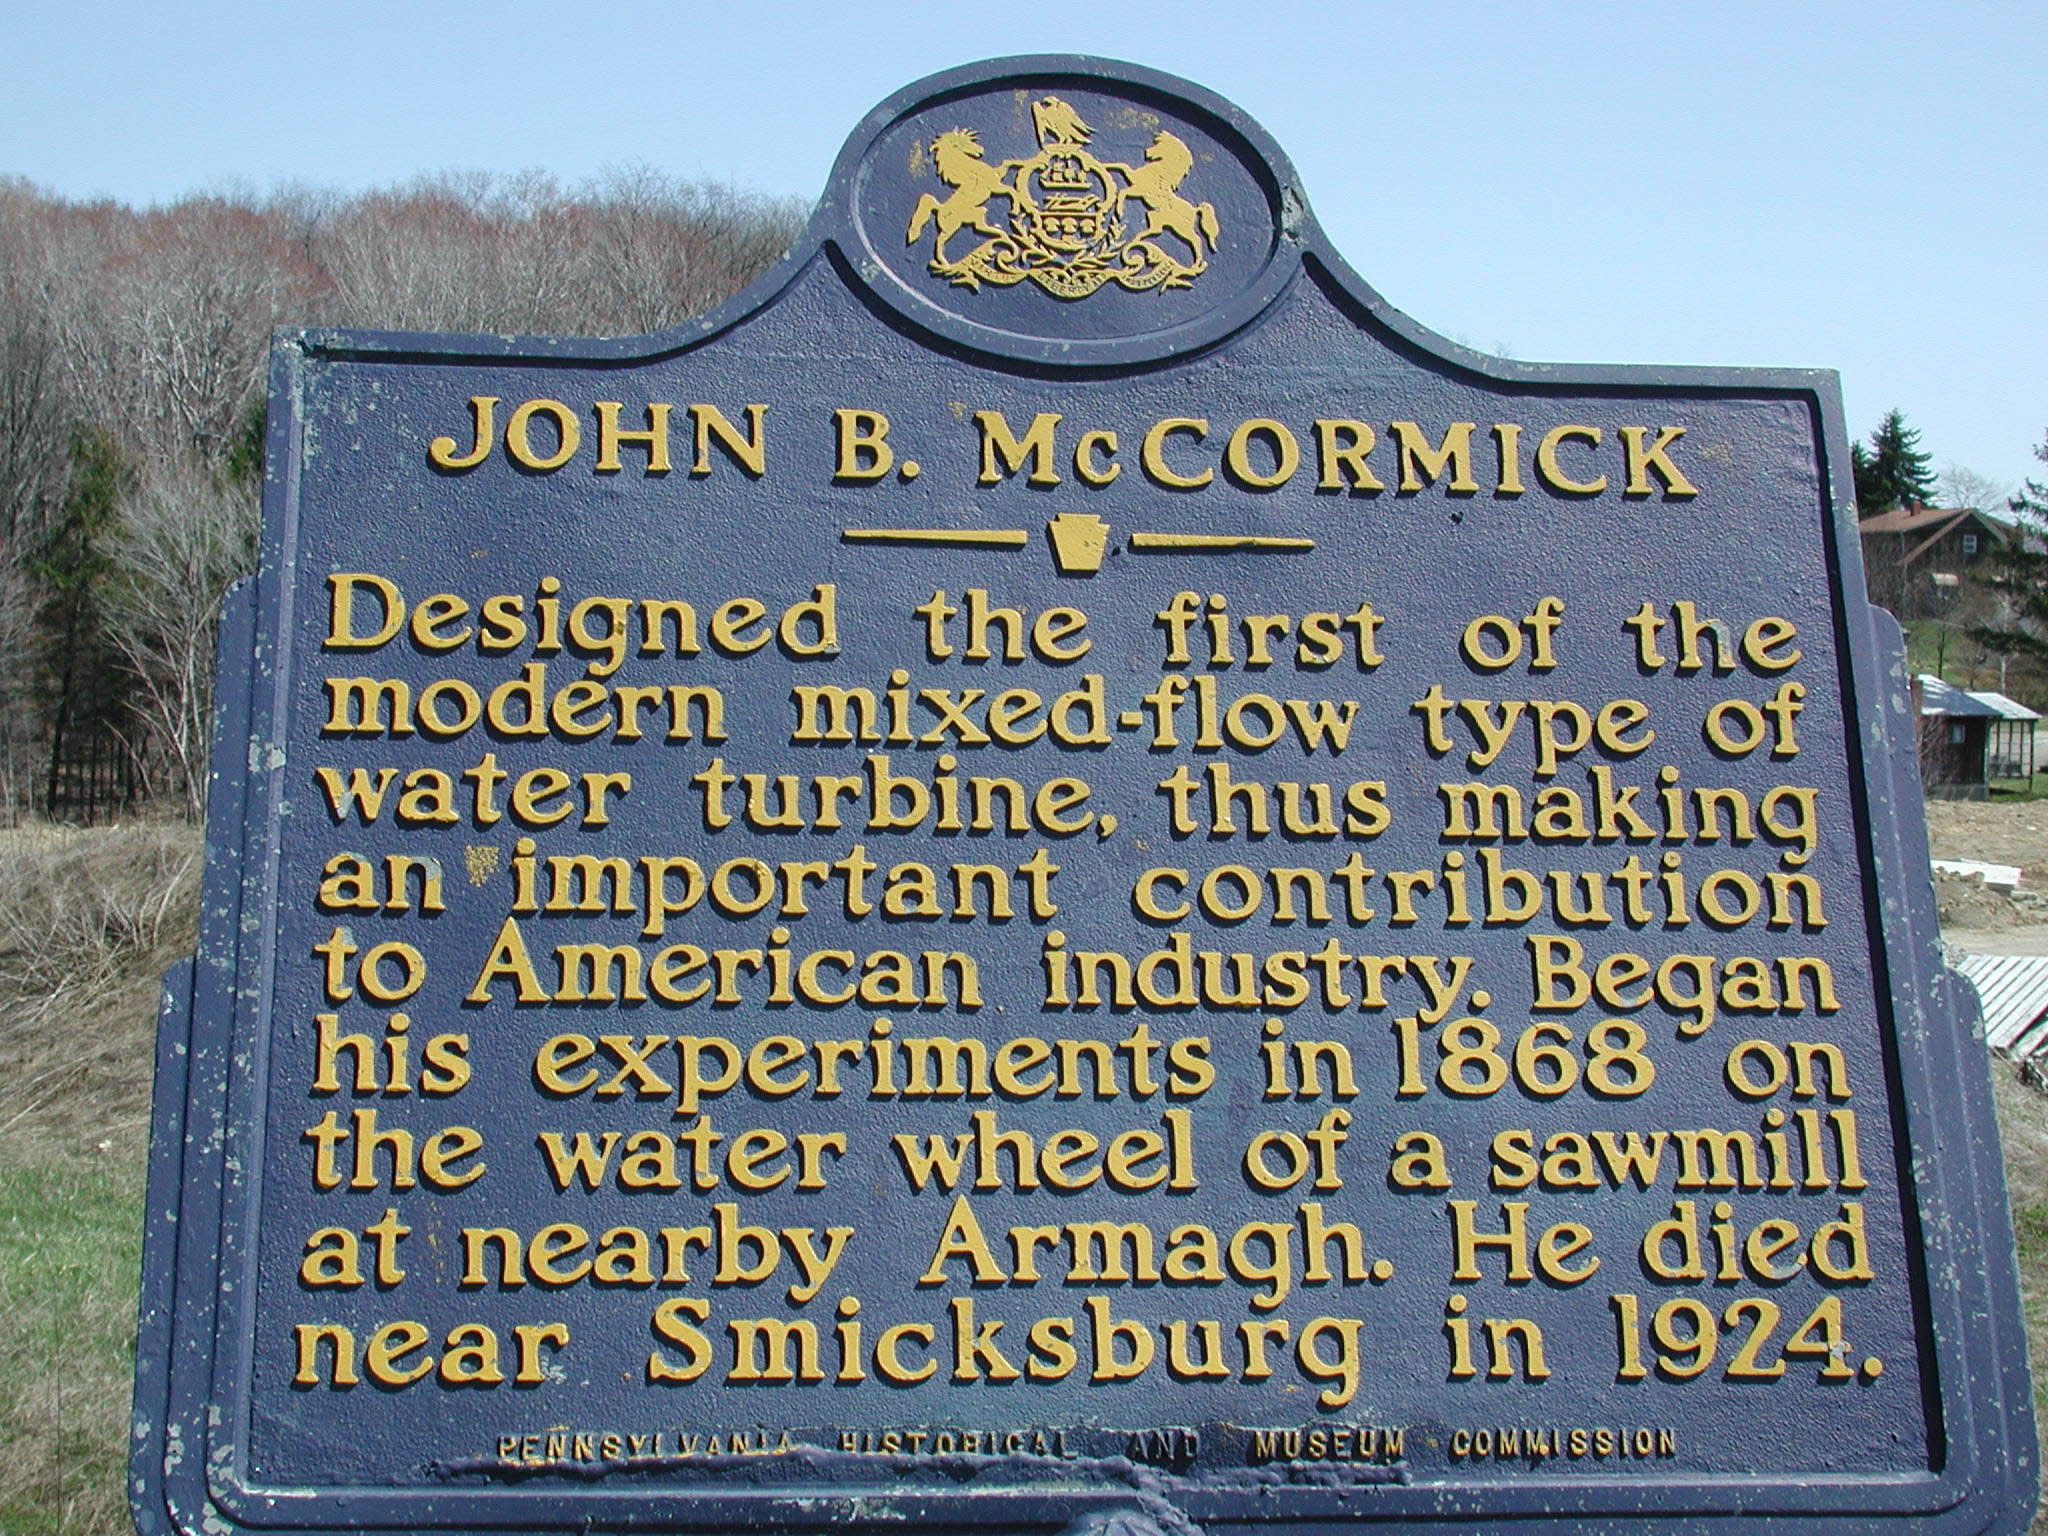 State Historical Marker for John B. McCormick